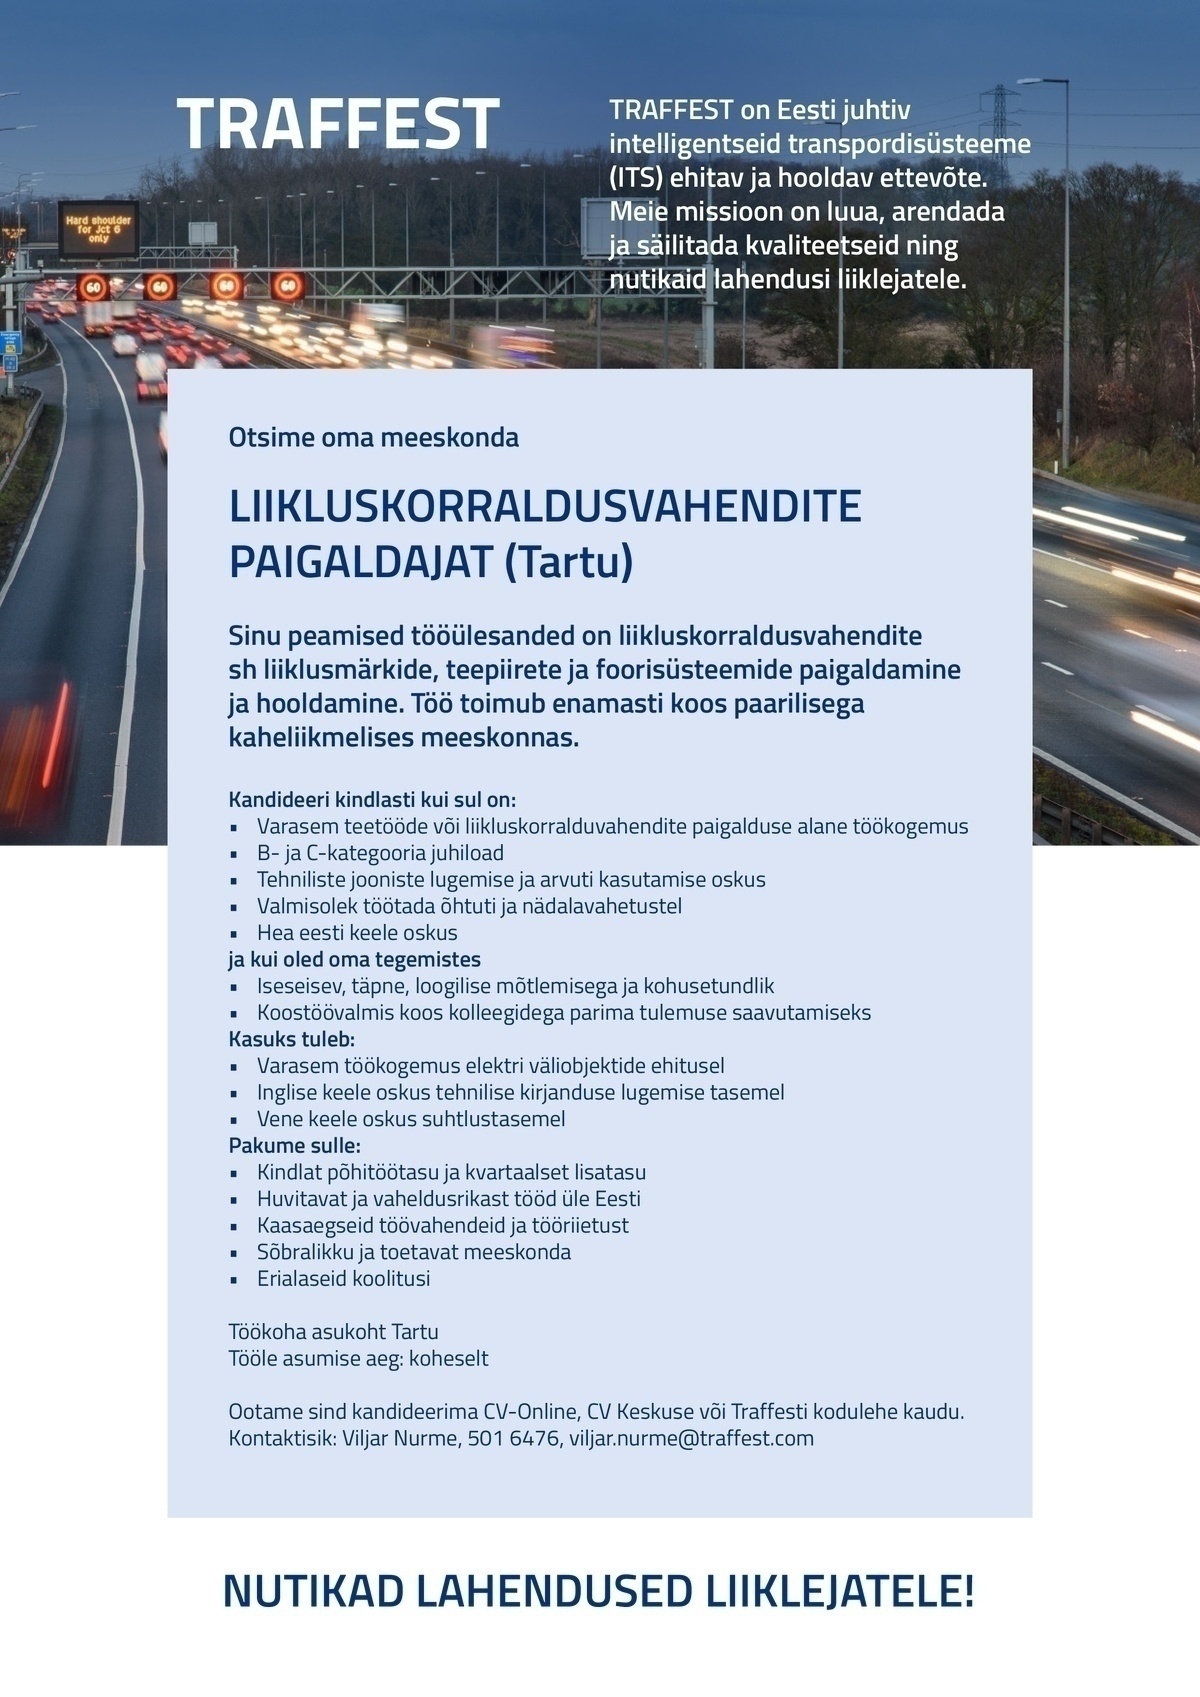 Traffest / IB Foor OÜ Liikluskorraldusvahendite  paigaldaja (Tartu)